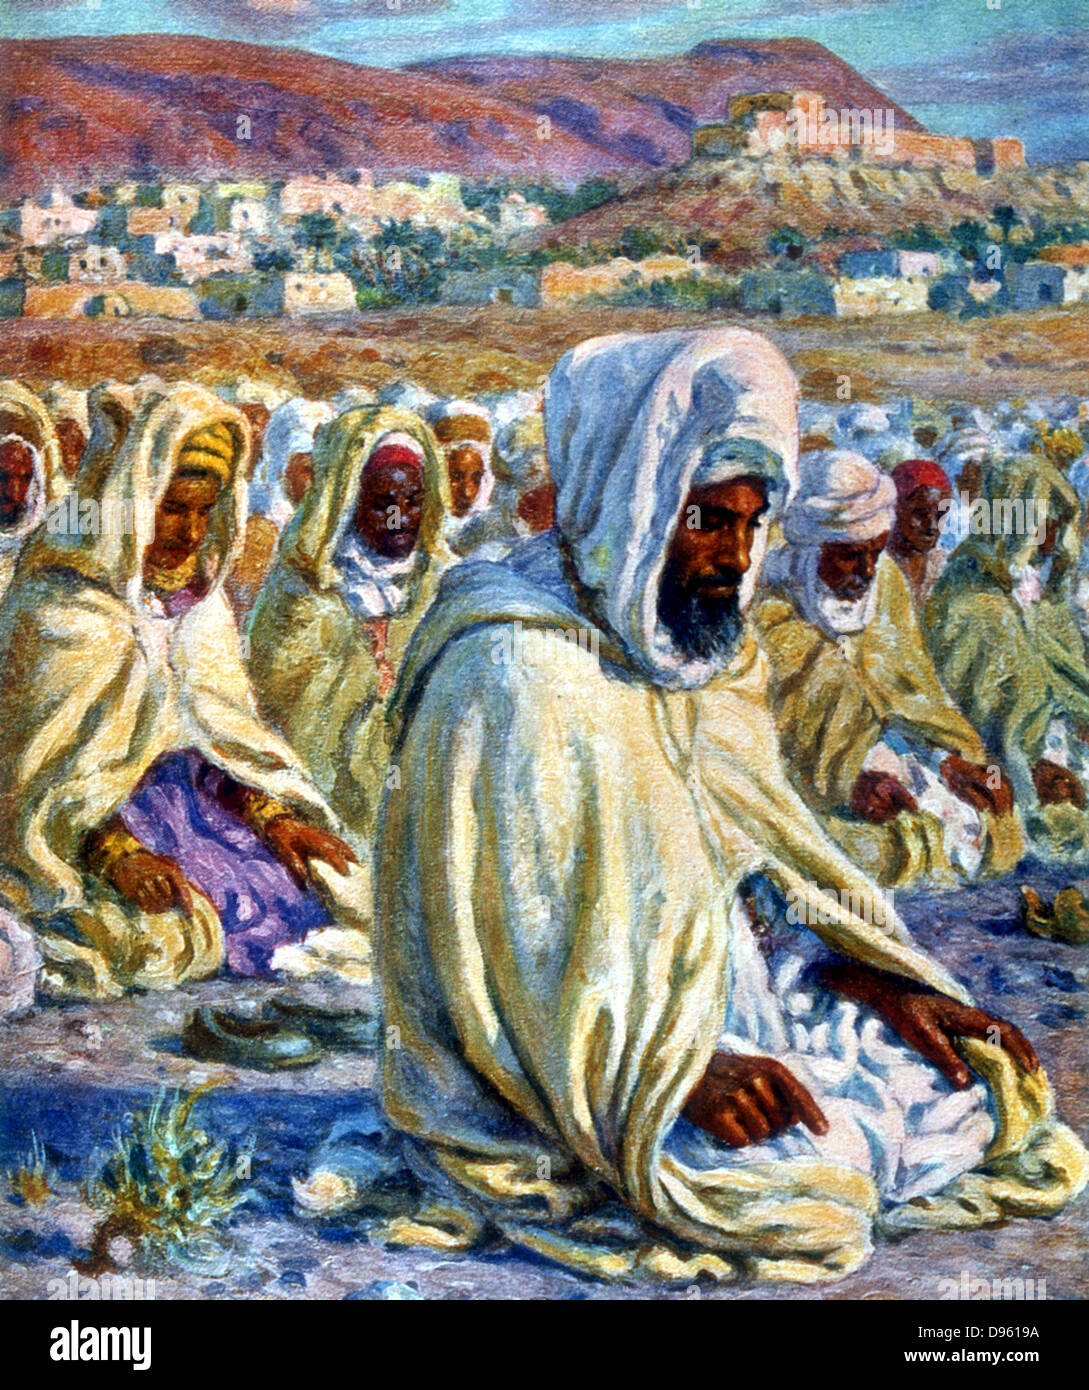 La preghiera. Illustrazione di E. Dinet (1861-1929) per 'La Vie de Mohammed, prophete d'Allah". Foto Stock